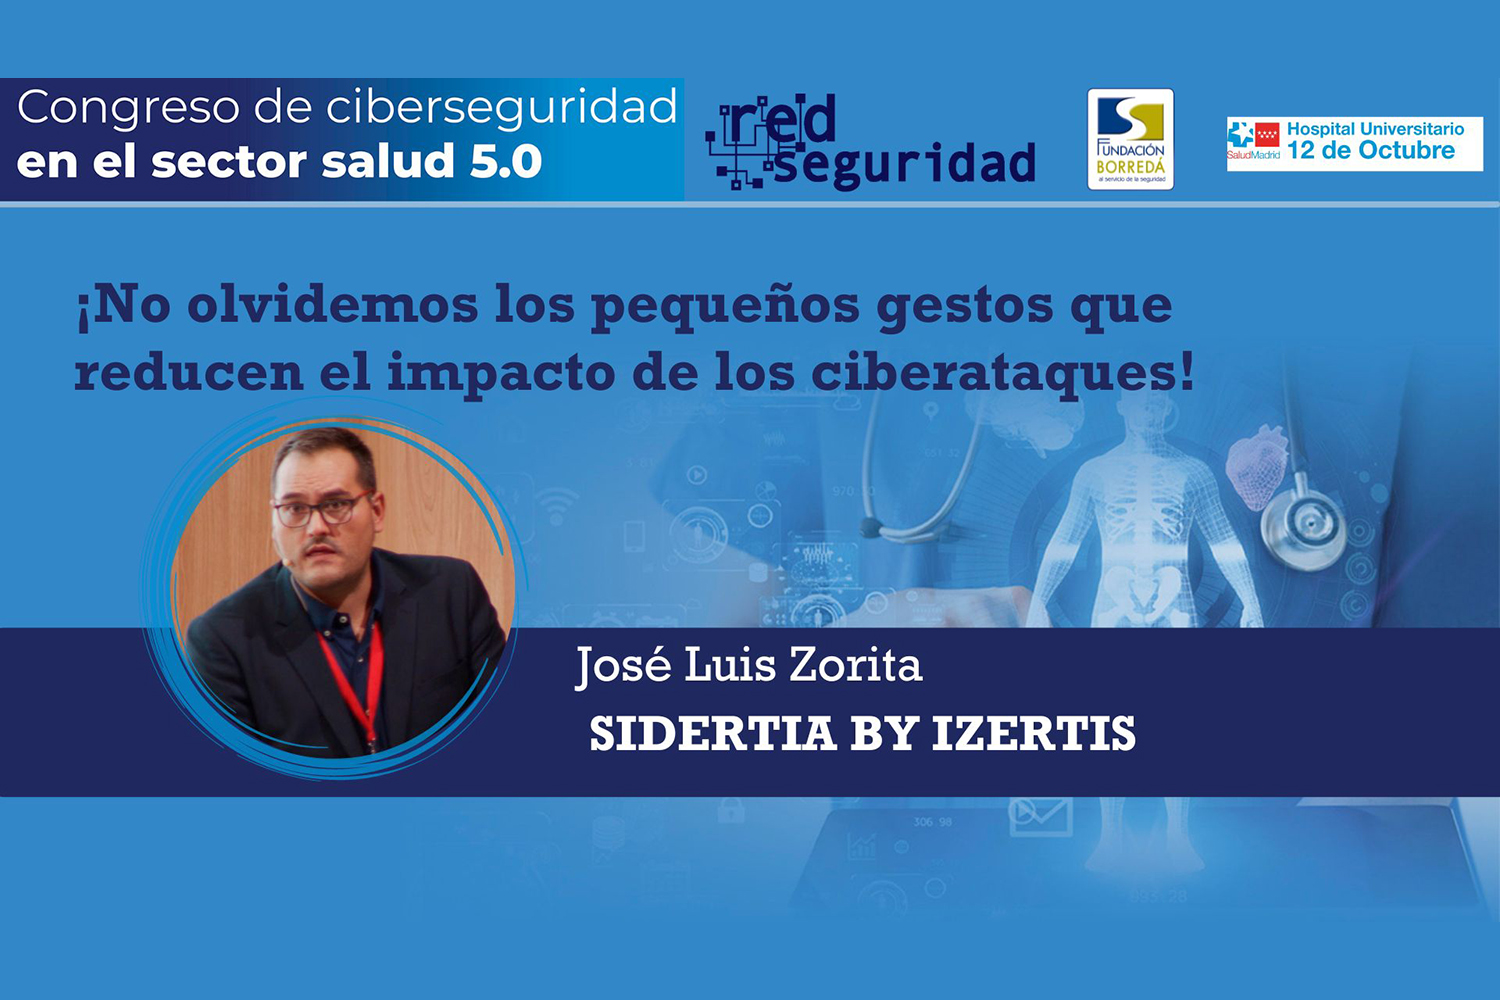 José Luis Zorita (Sidertia by Izertis): ¡No olvidemos los pequeños gestos que reducen el impacto de los ciberataques!